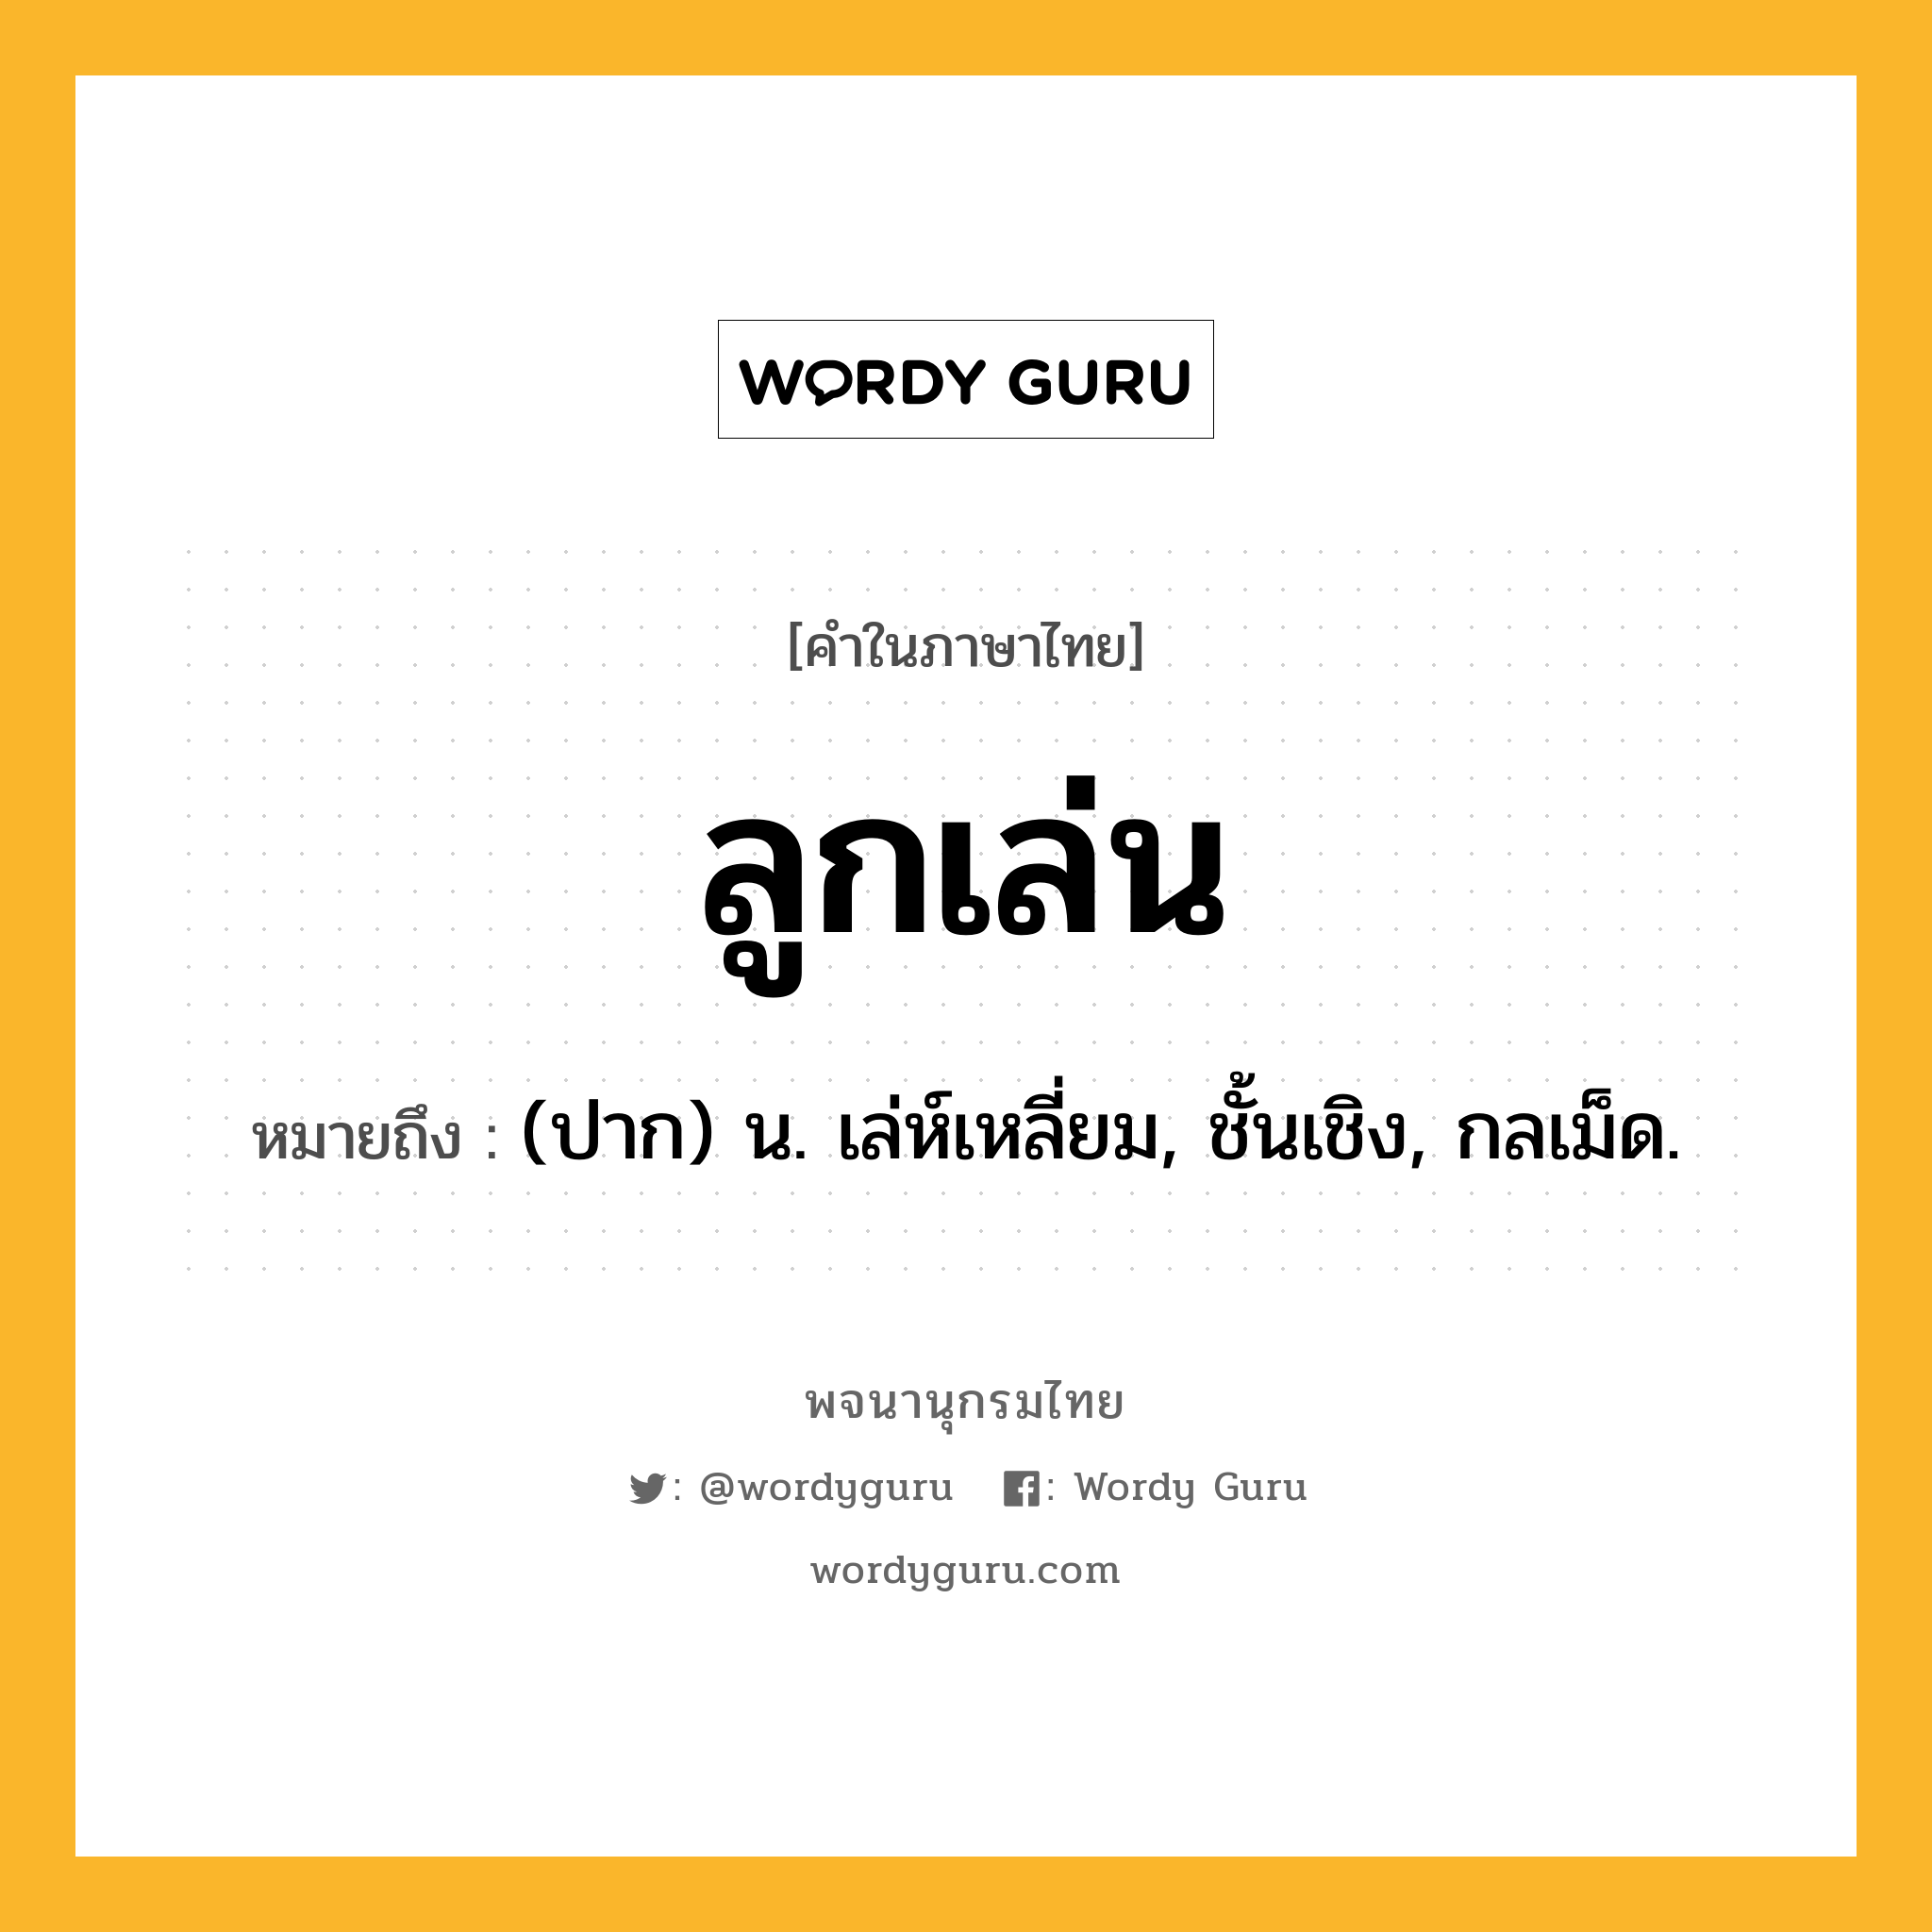 ลูกเล่น ความหมาย หมายถึงอะไร?, คำในภาษาไทย ลูกเล่น หมายถึง (ปาก) น. เล่ห์เหลี่ยม, ชั้นเชิง, กลเม็ด.